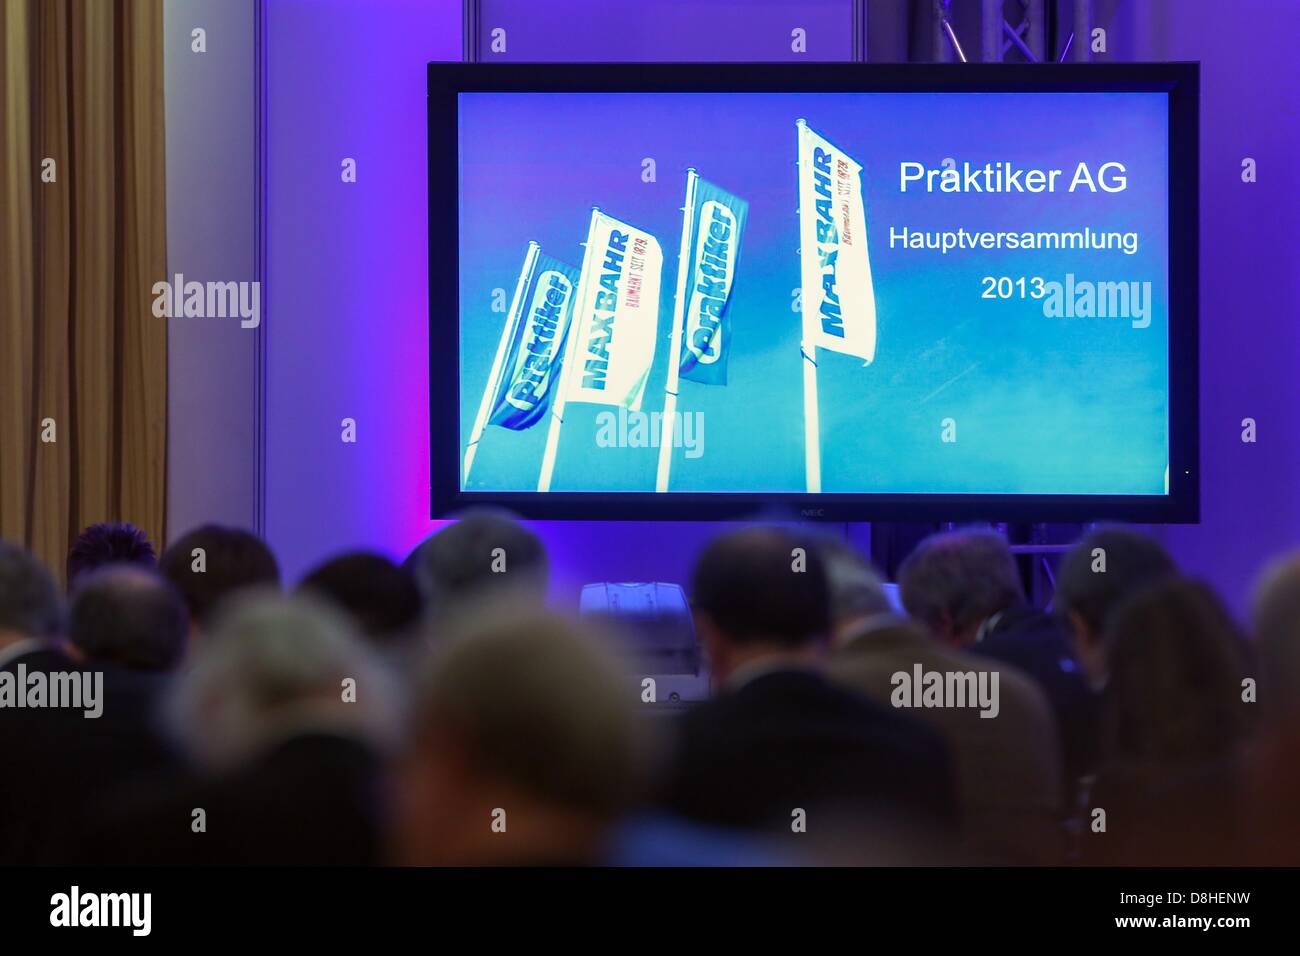 L'evento viene scritto su un grande schermo durante la riunione degli azionisti a Praktiker AG ad Amburgo, Germania, 29 maggio 2013. Foto: BODO SEGNA Foto Stock